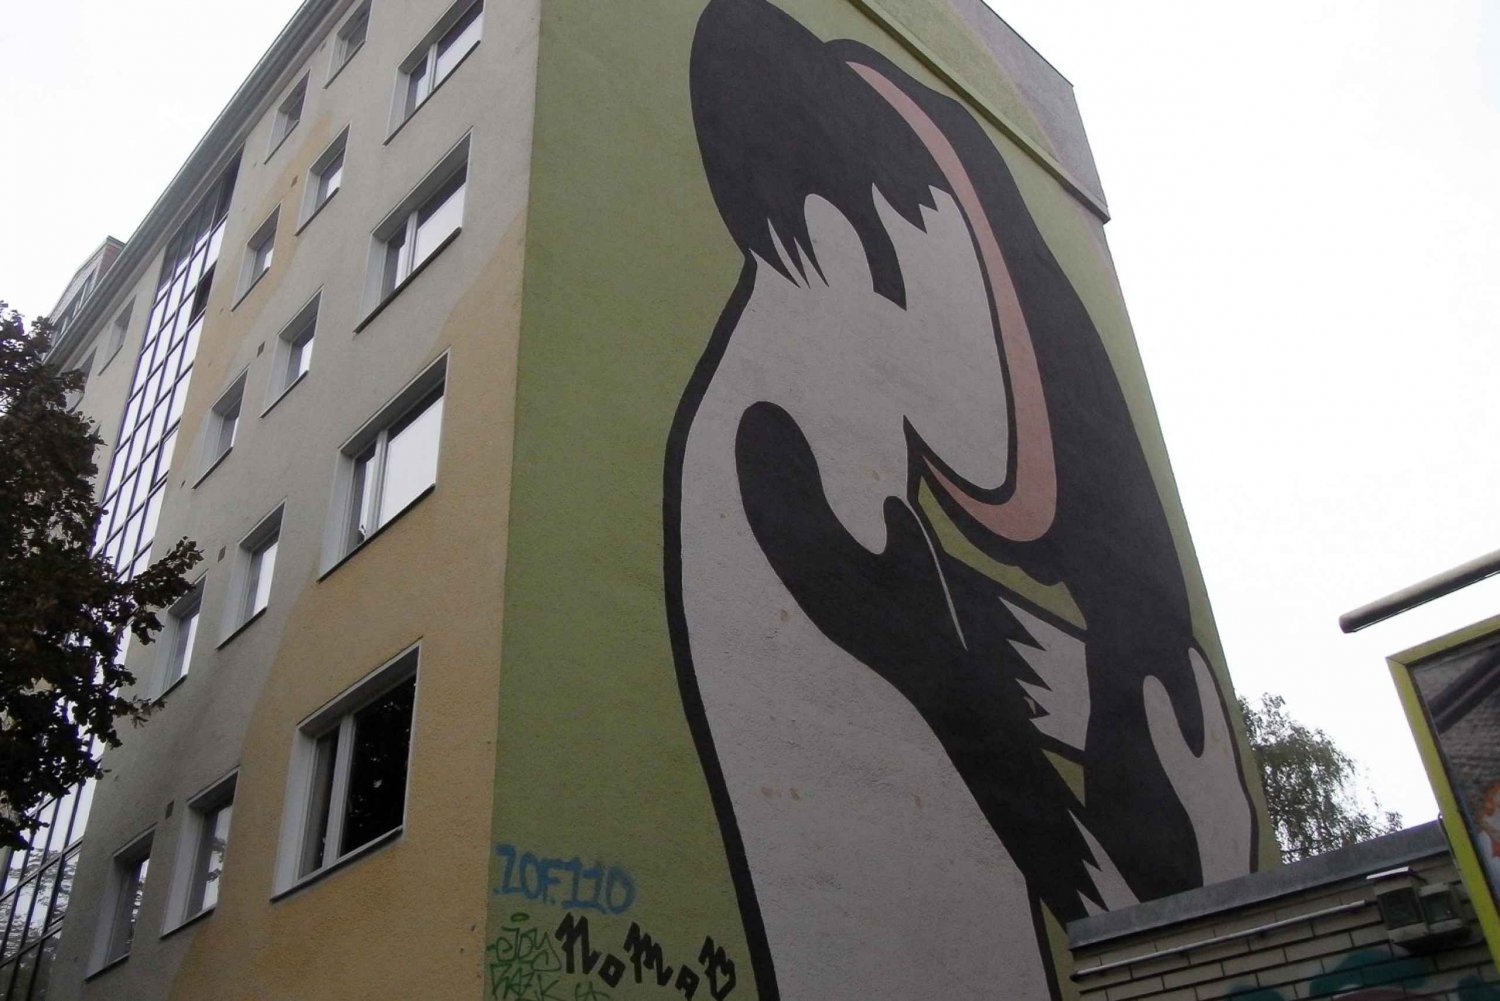 Visita privada Berlín Alternativo - Murales, Graffitis, Okupas